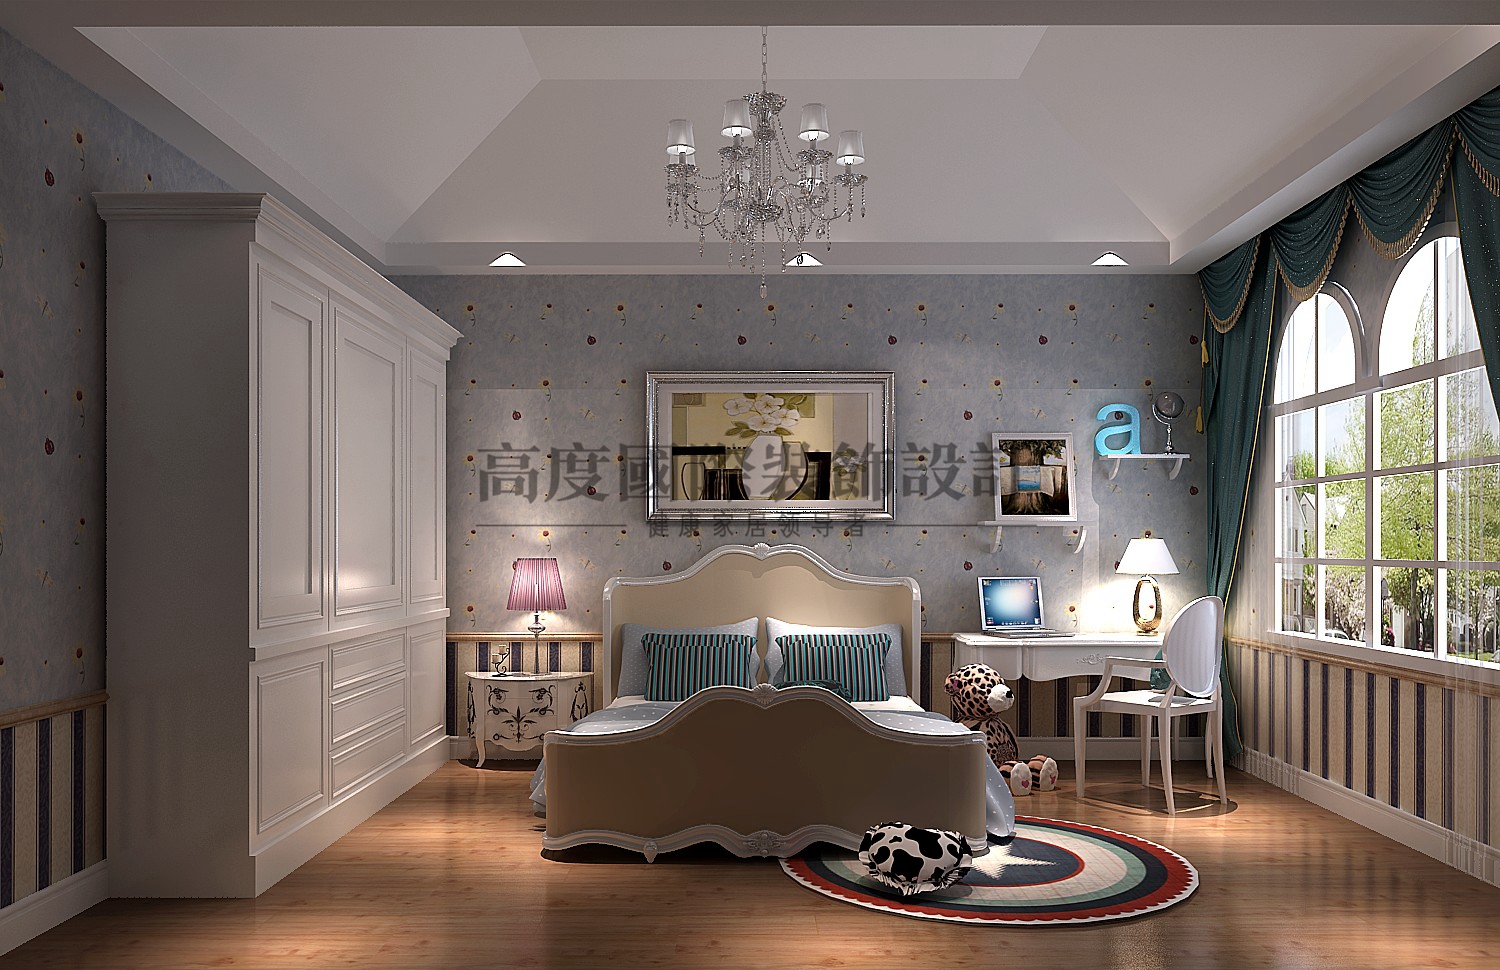 白领 优雅 浪漫 情怀 和谐 大自然 简约 朴质 卧室图片来自重庆高度国际装饰工程有限公司在金色漫香苑-意式风格的分享